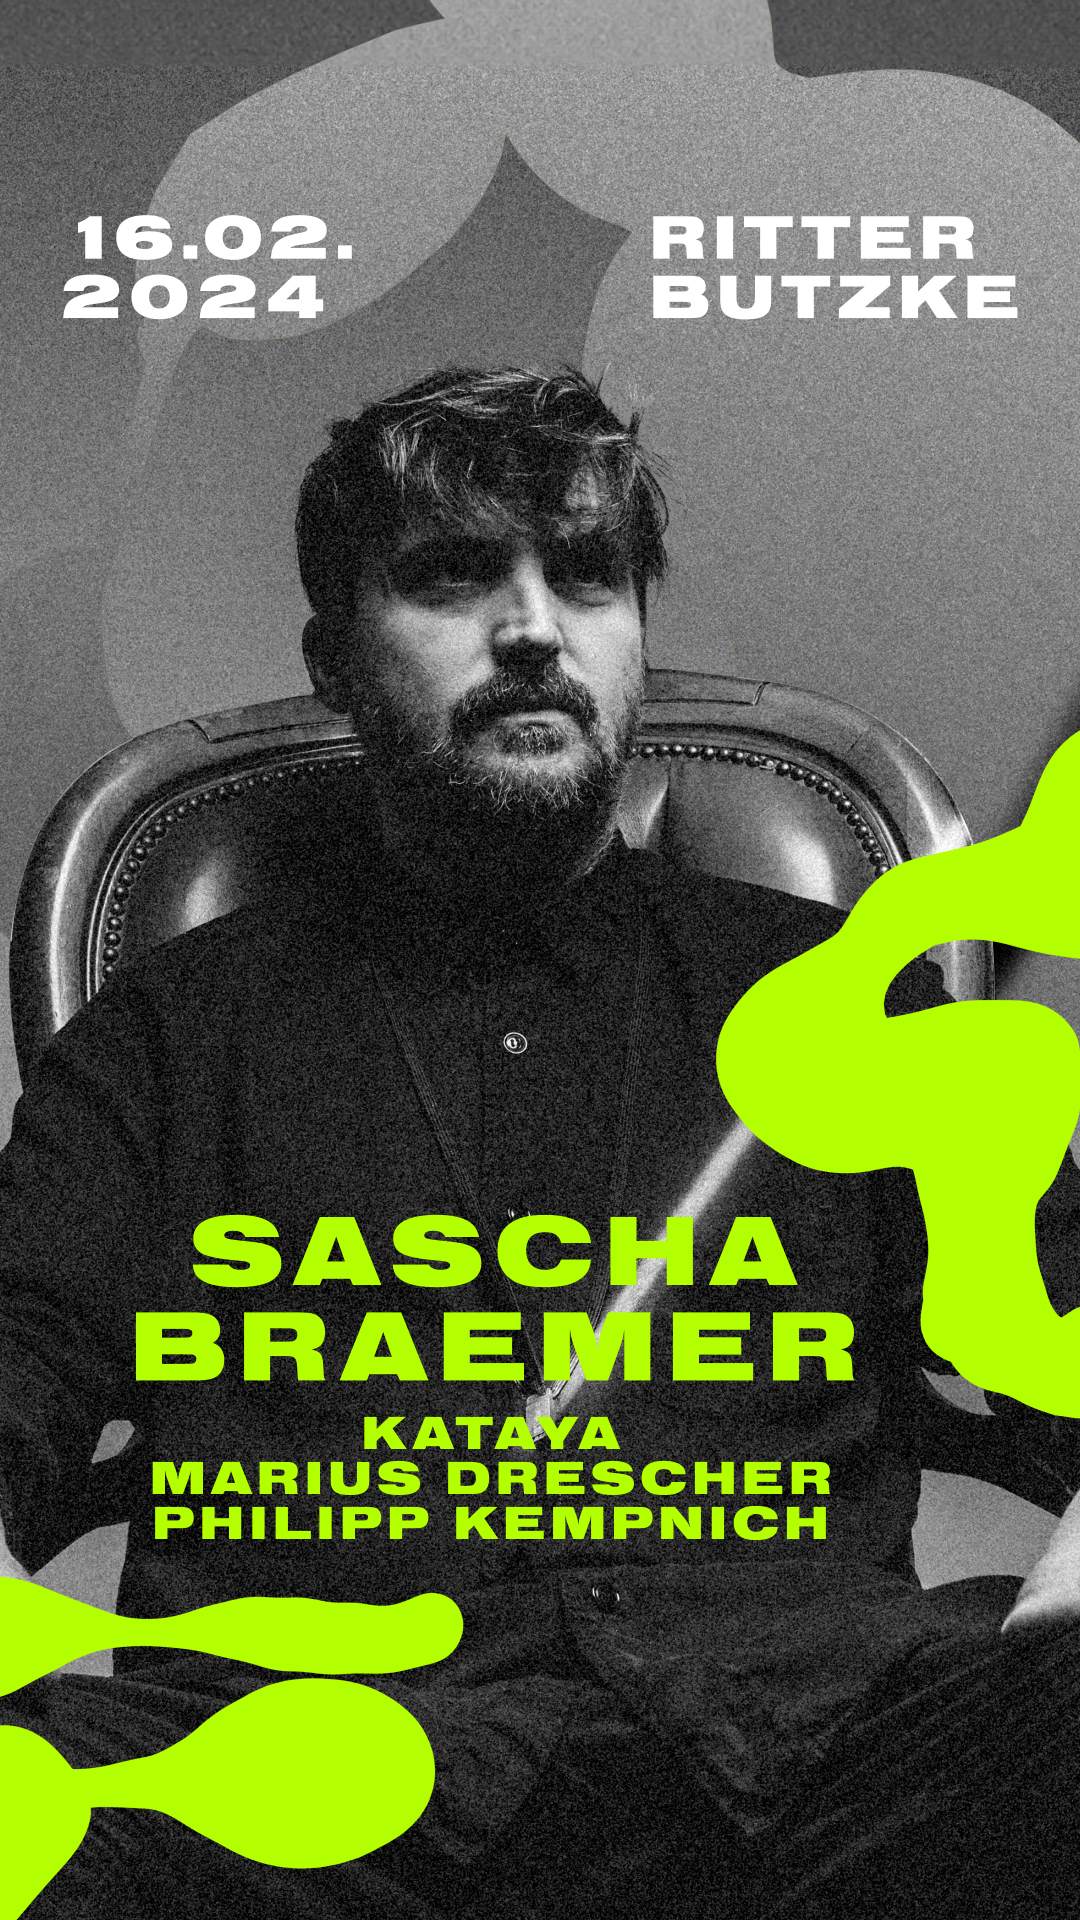 Sascha Braemer - フライヤー裏